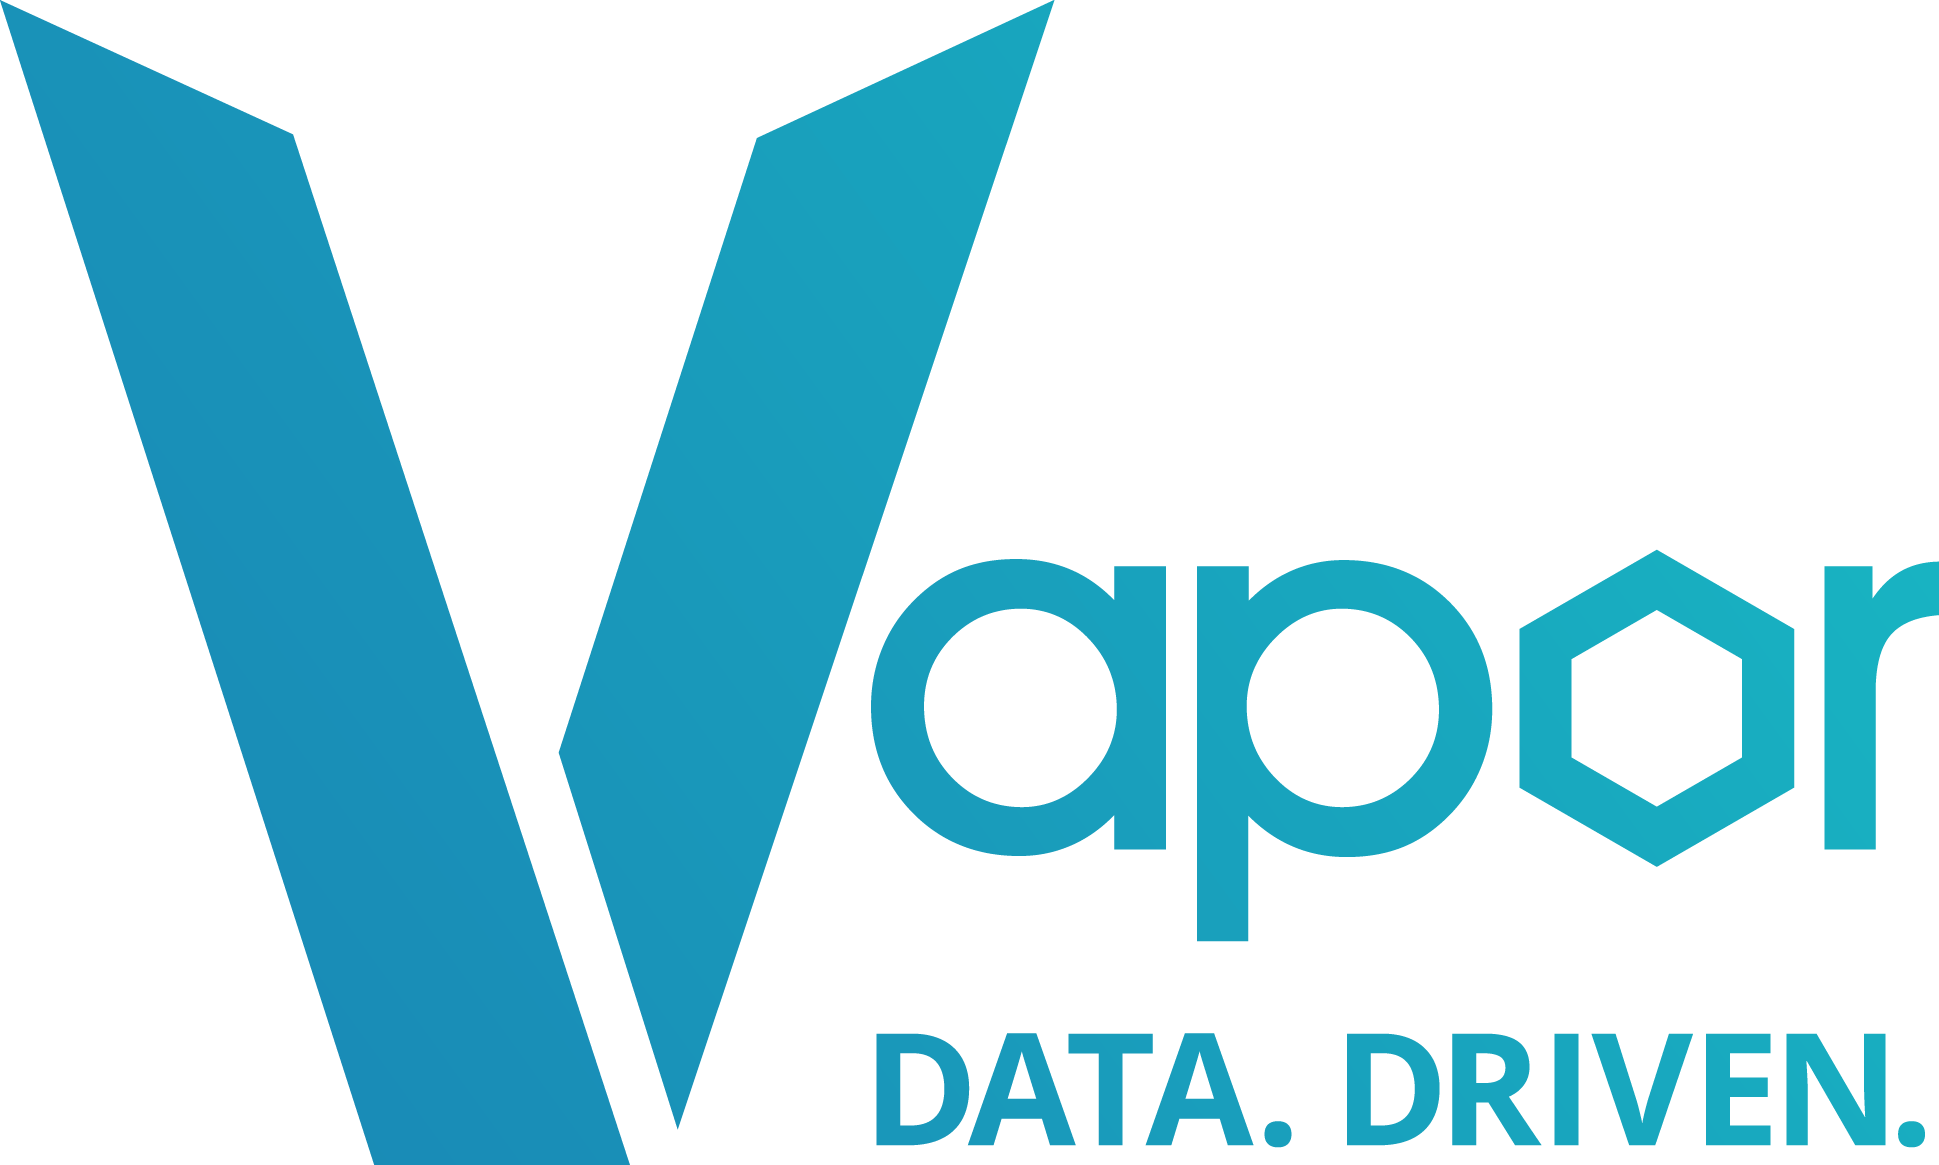 Vapor Io Data Driven Logo - Vapor Io Logo Clipart (1939x1165), Png Download